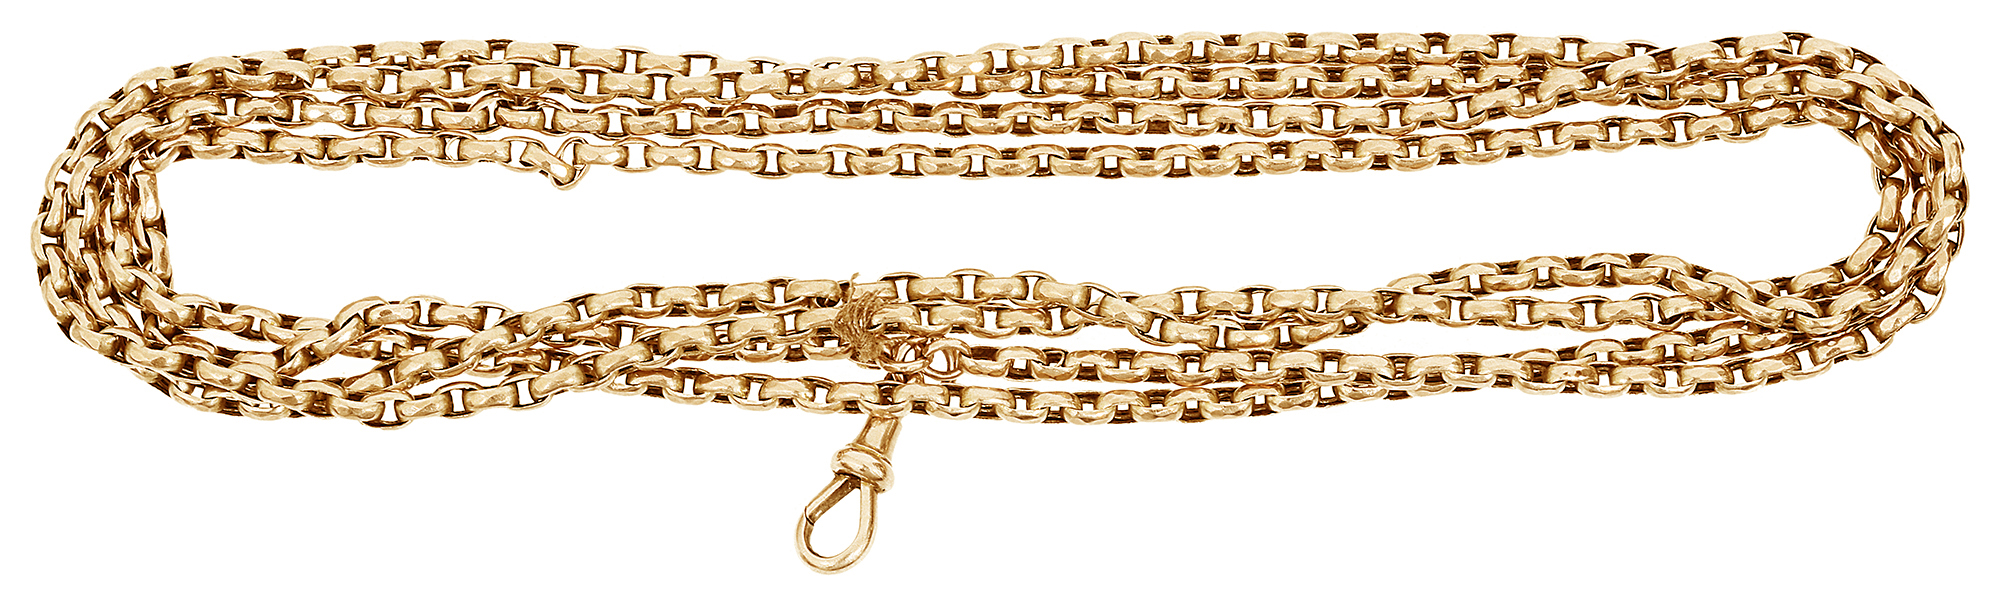 An Edwardian 9ct gold long guard chain